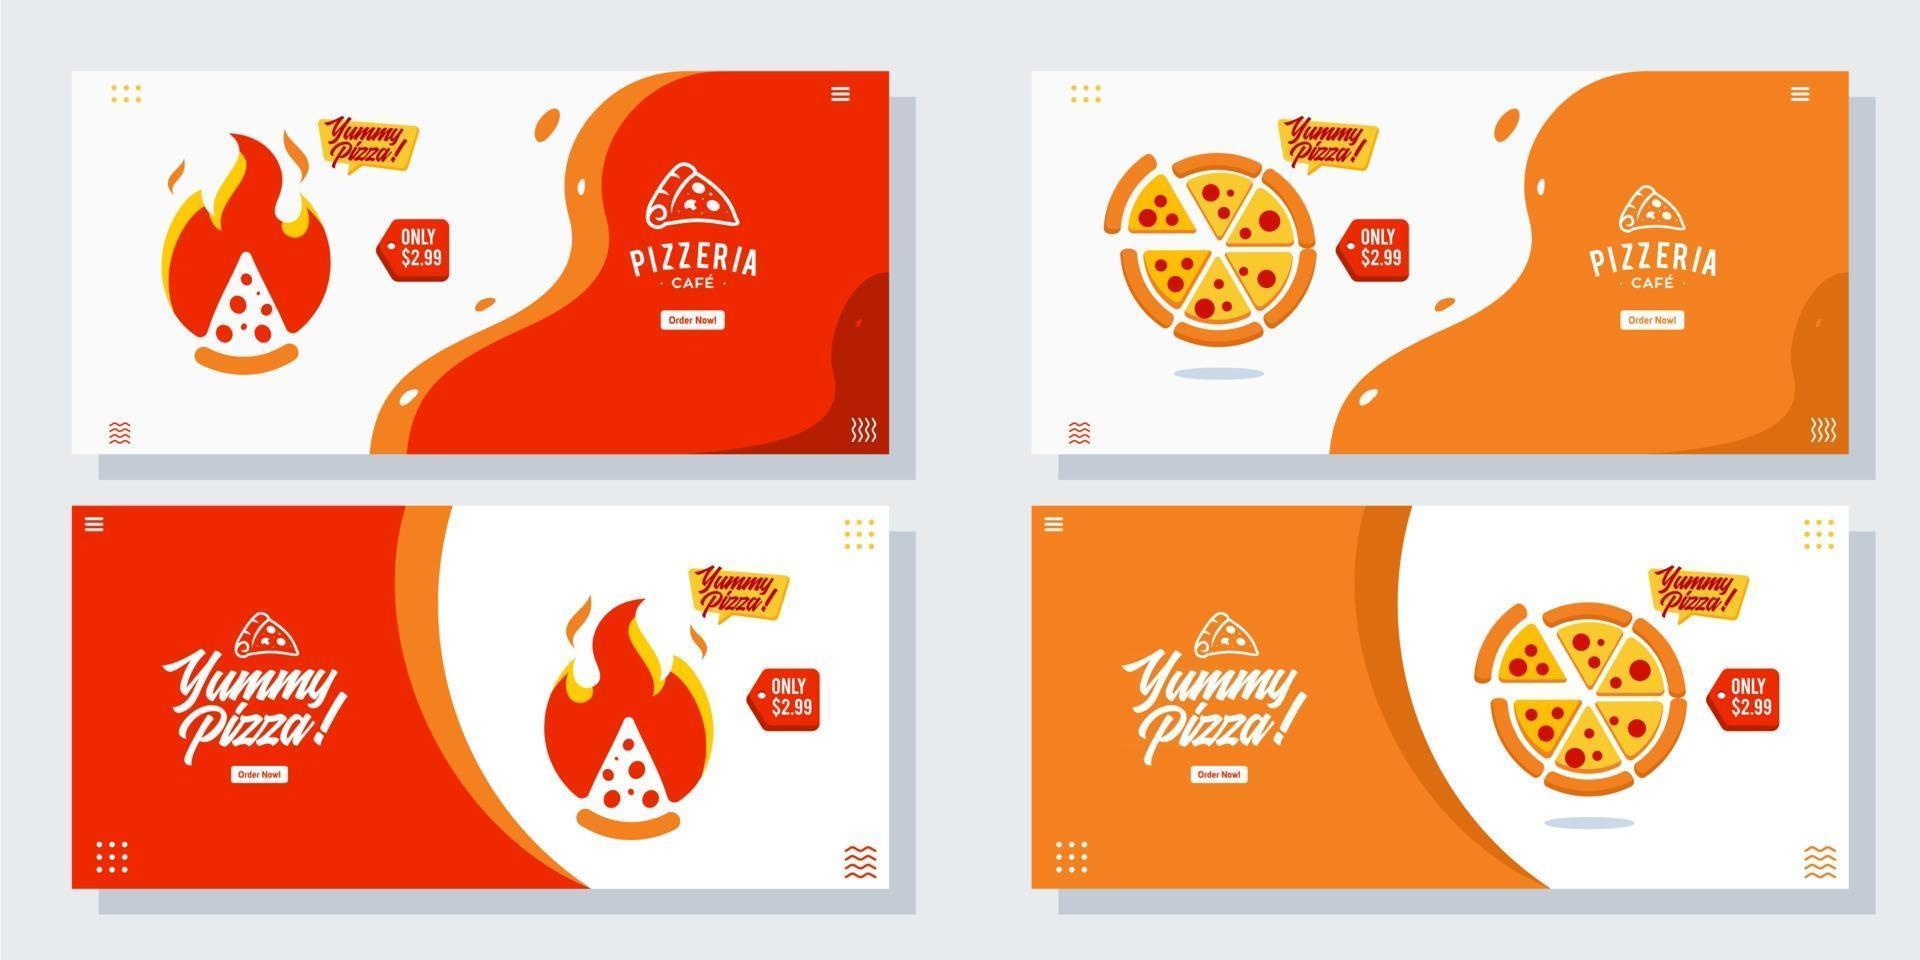 Pizza Pizzeria Flyer Vektor Set Sammlung Cartoon Banner Web ui ux Anzeigen Illustration Hintergrund mit Wurstsymbol, Förderung für Website Homepage